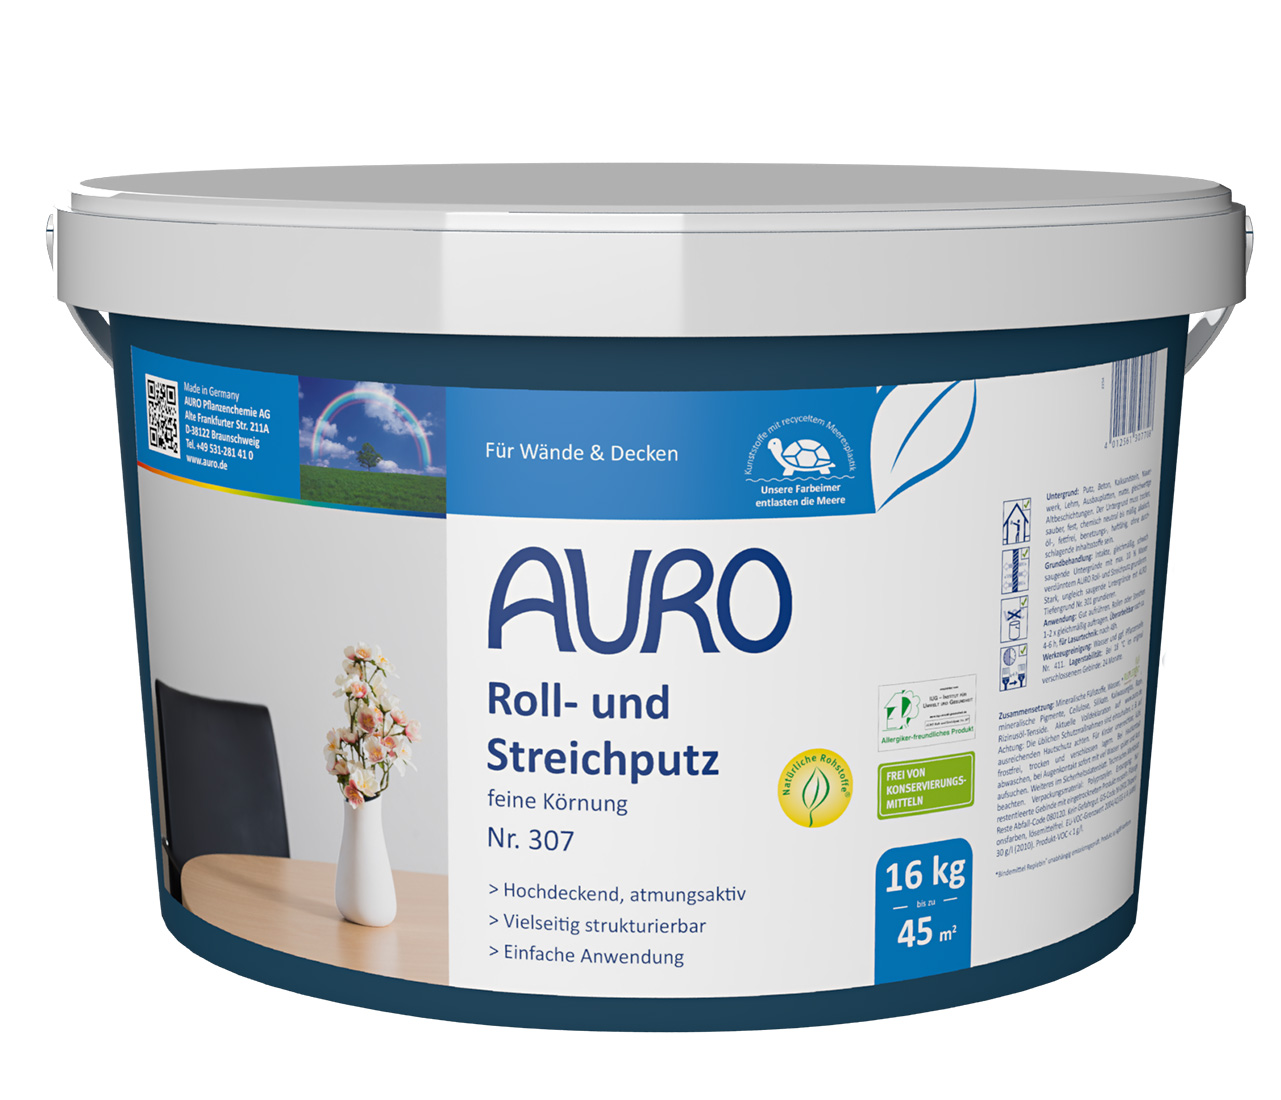 AURO Roll- und Streichputz feine Körnung 307 - 16 kg